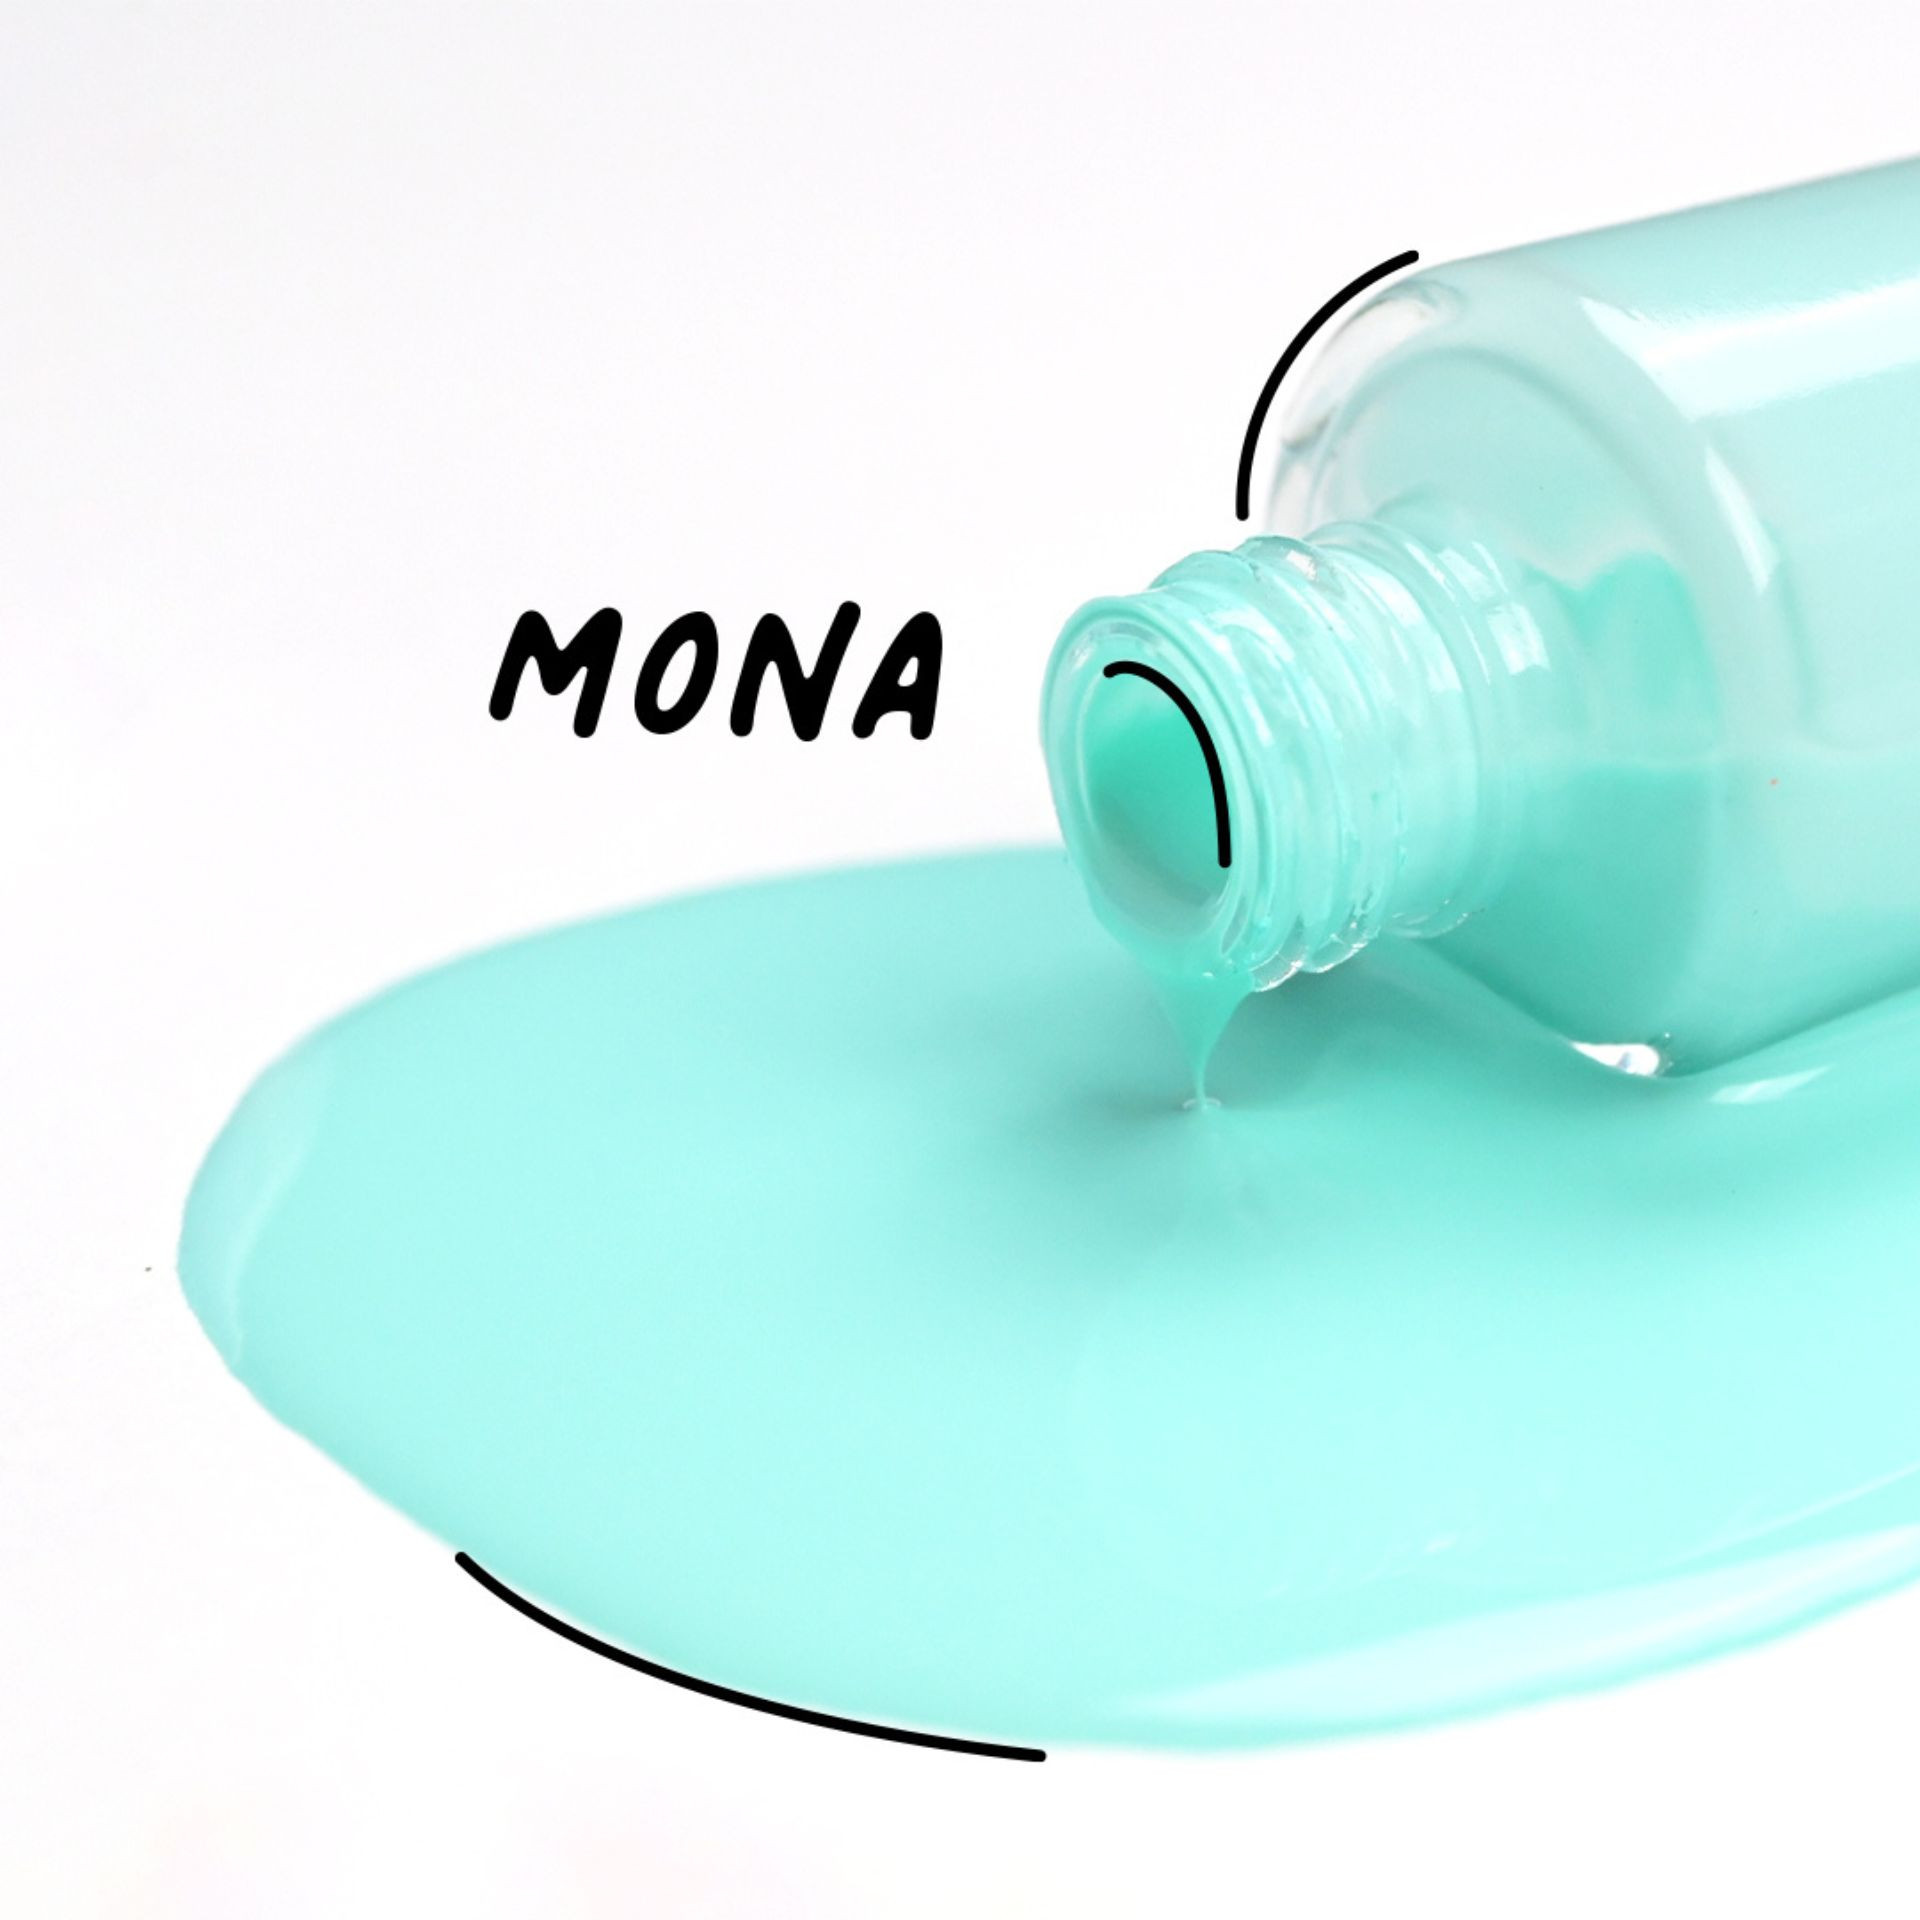 Mona – lagoon green